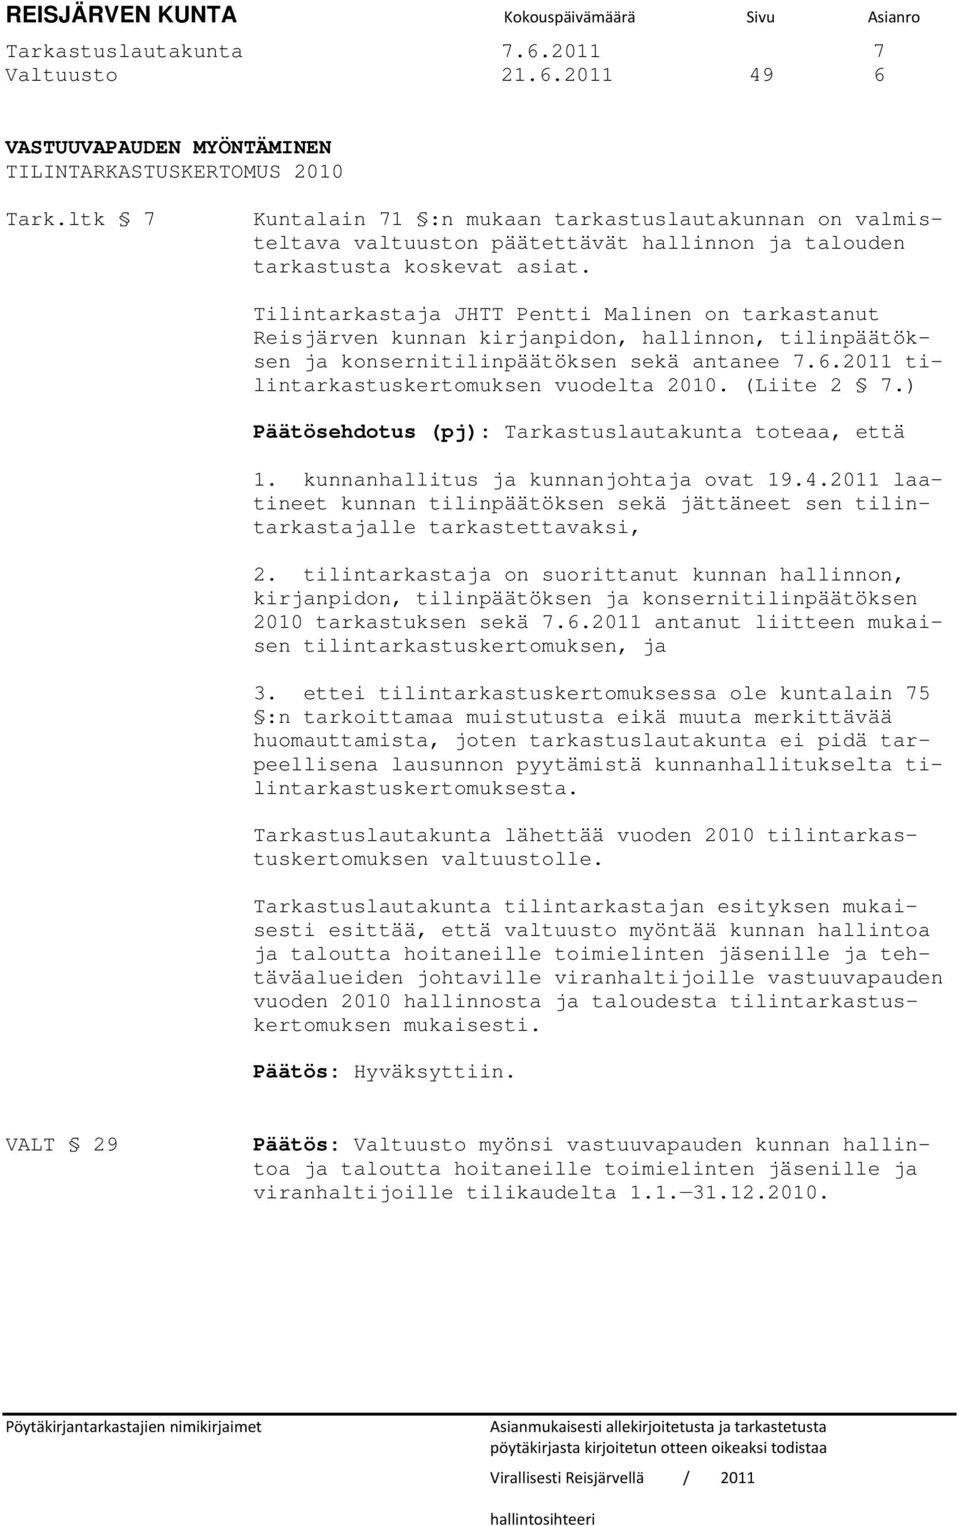 Tilintarkastaja JHTT Pentti Malinen on tarkastanut Reisjärven kunnan kirjanpidon, hallinnon, tilinpäätöksen ja konsernitilinpäätöksen sekä antanee 7.6.2011 tilintarkastuskertomuksen vuodelta 2010.